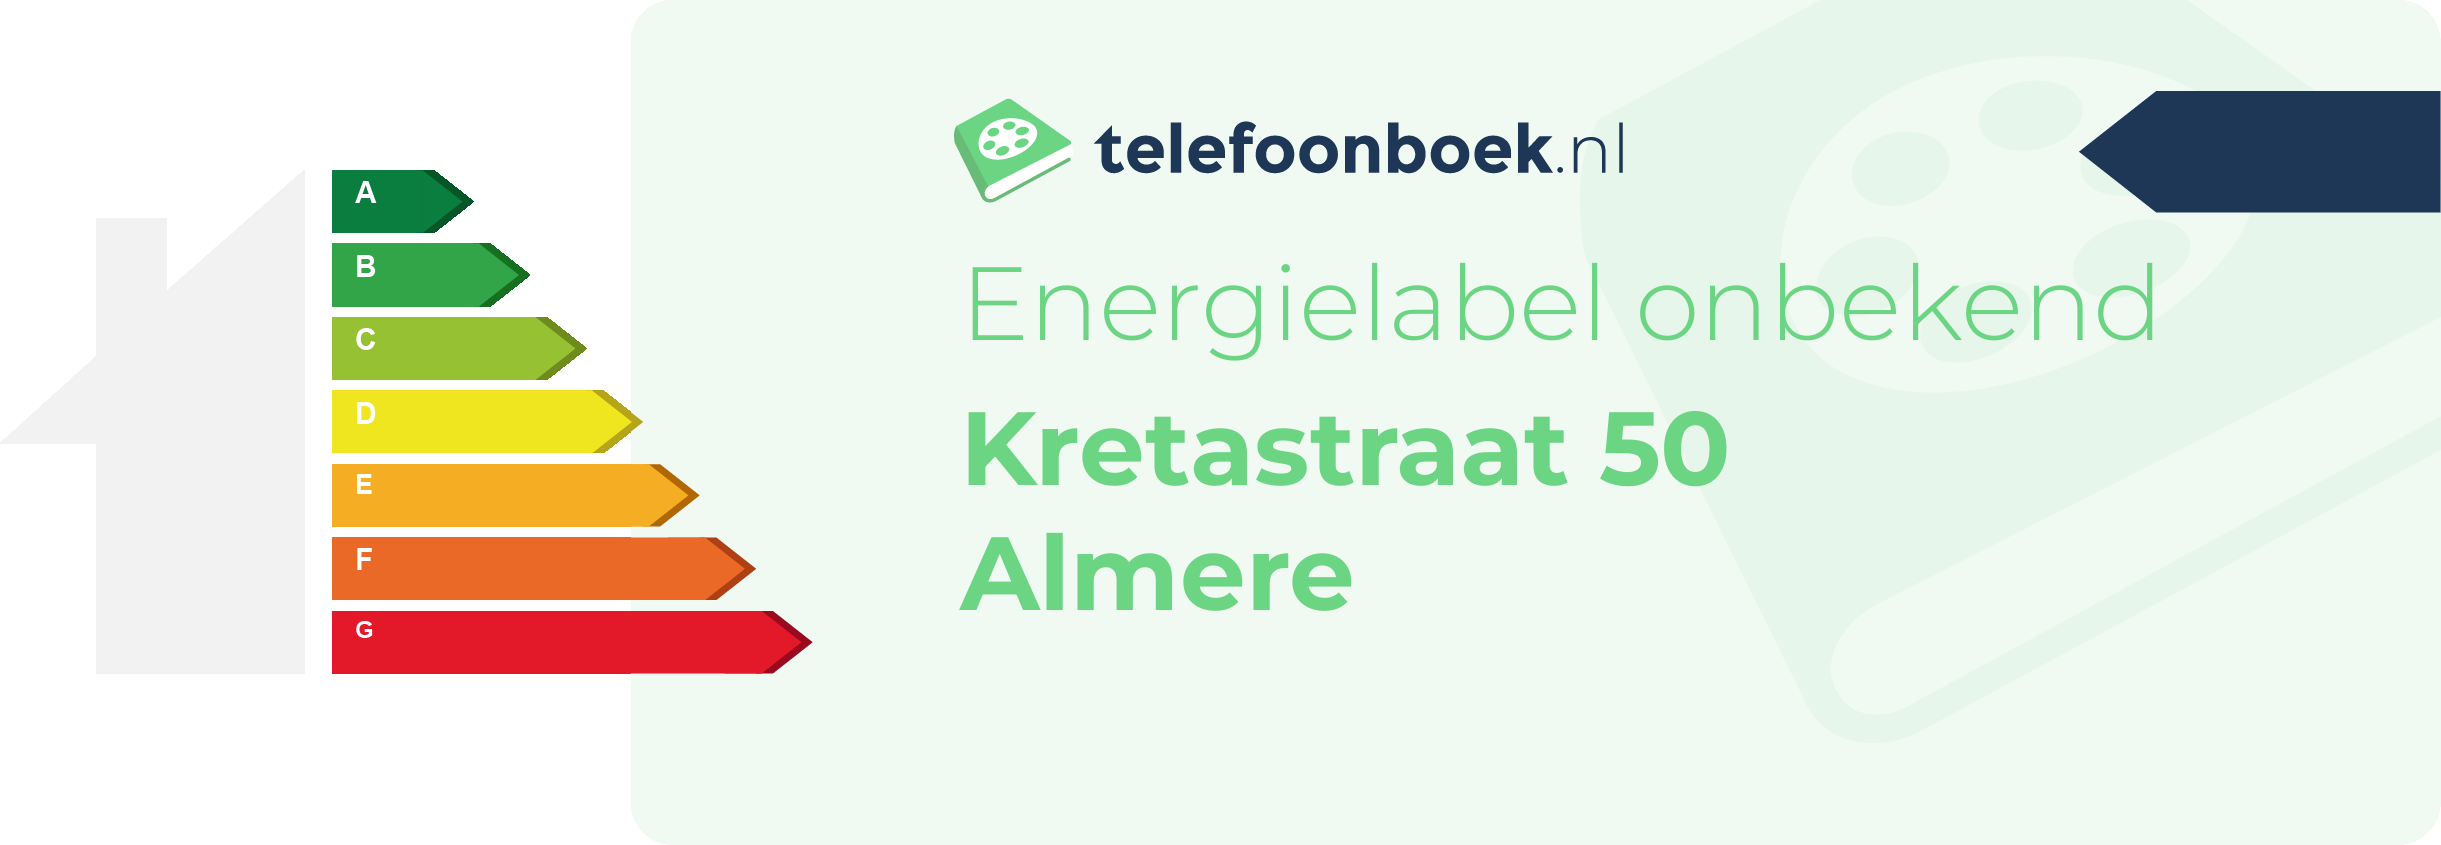 Energielabel Kretastraat 50 Almere